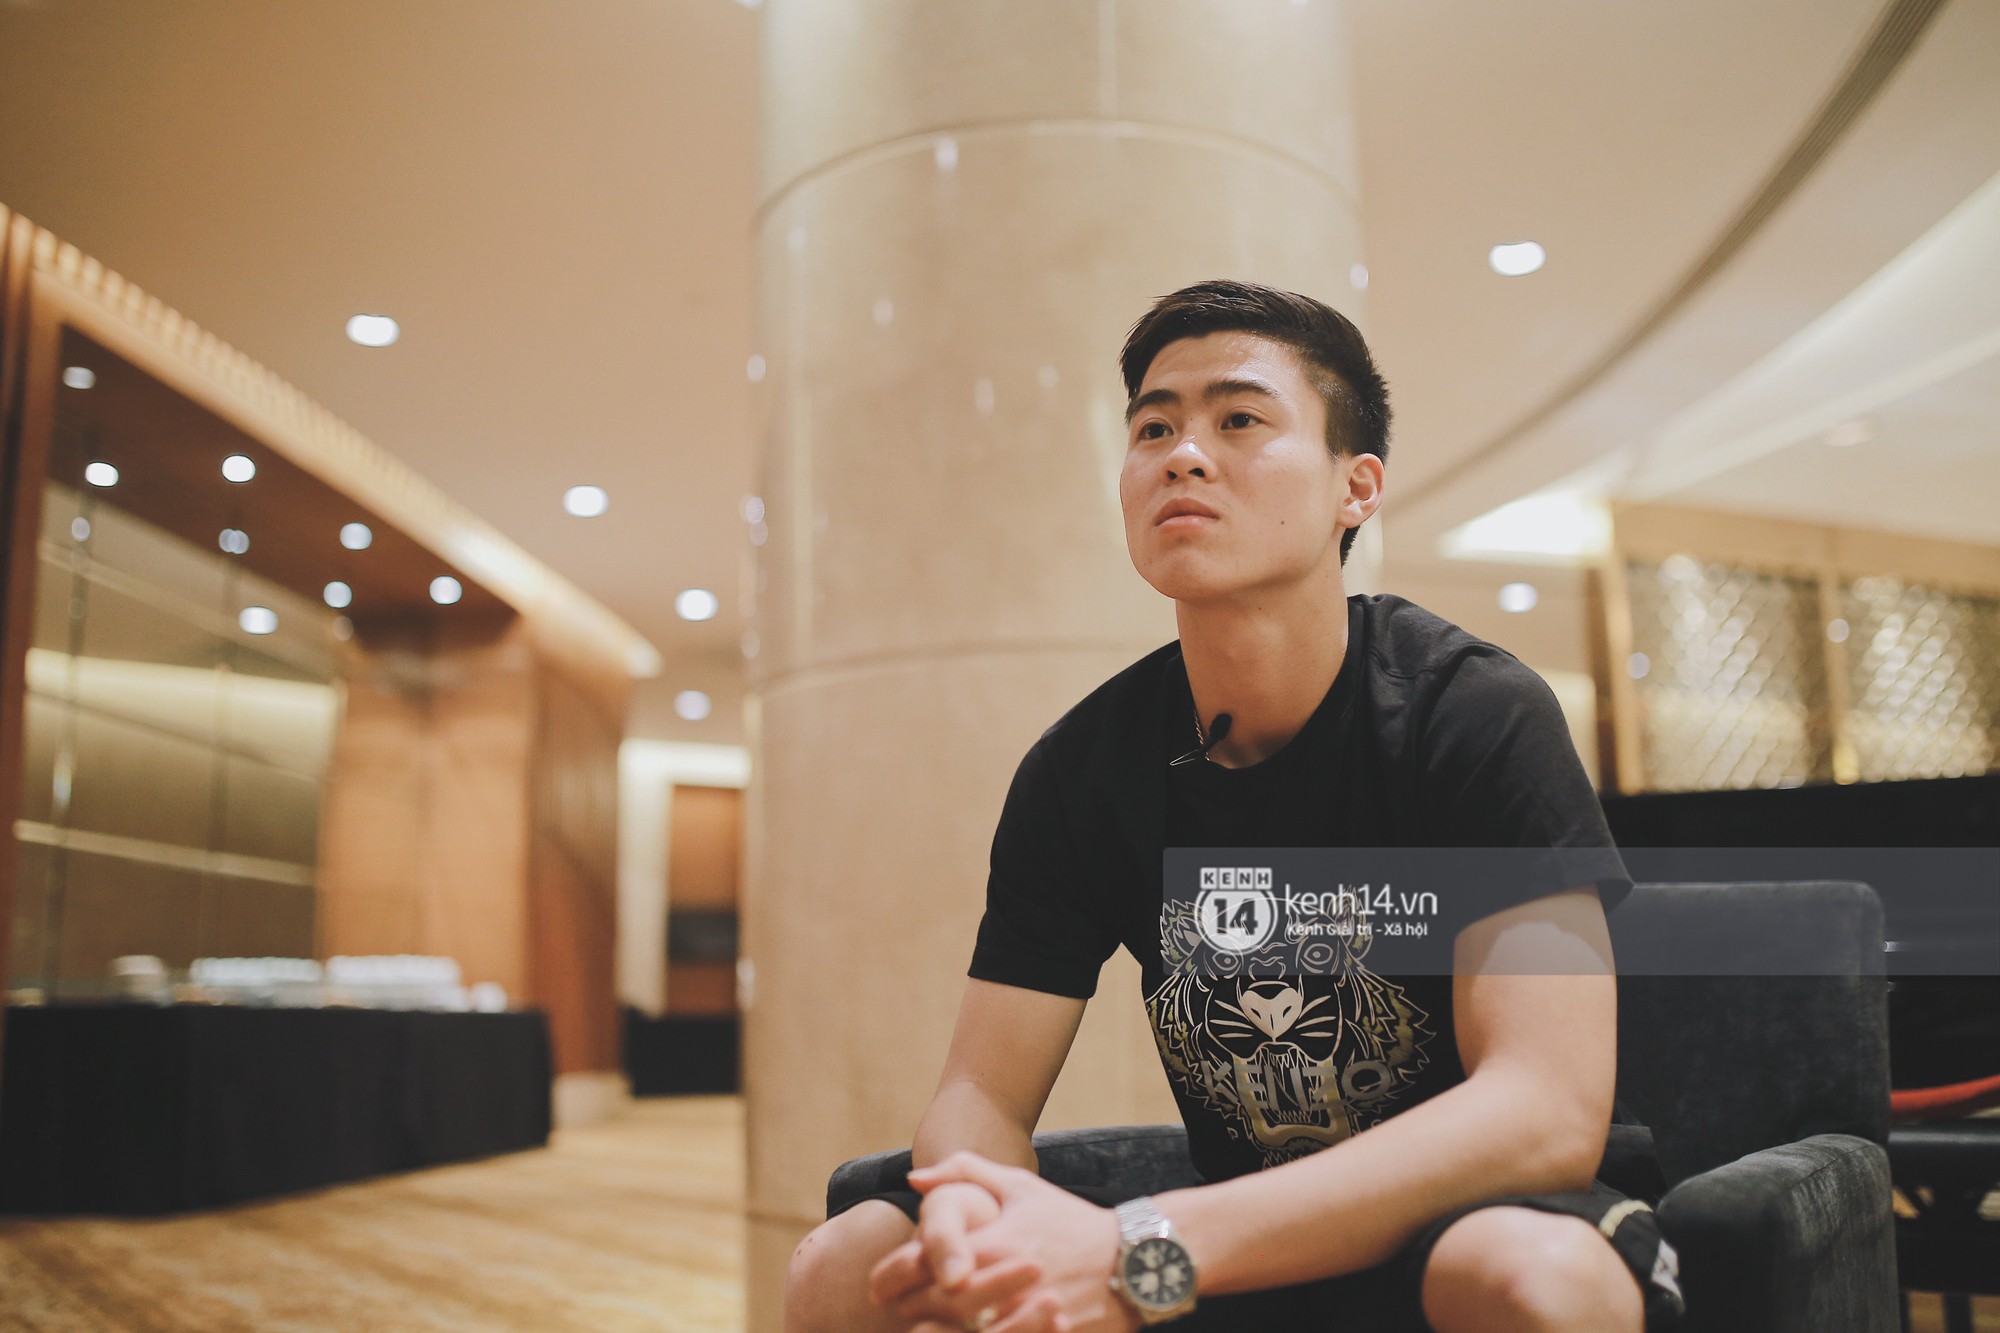 Duy Mạnh U23 Việt Nam: Trong đội chỉ có mình với Hồng Duy bán hàng online, nhưng thật ra là... đăng hộ bạn gái đấy - Ảnh 6.